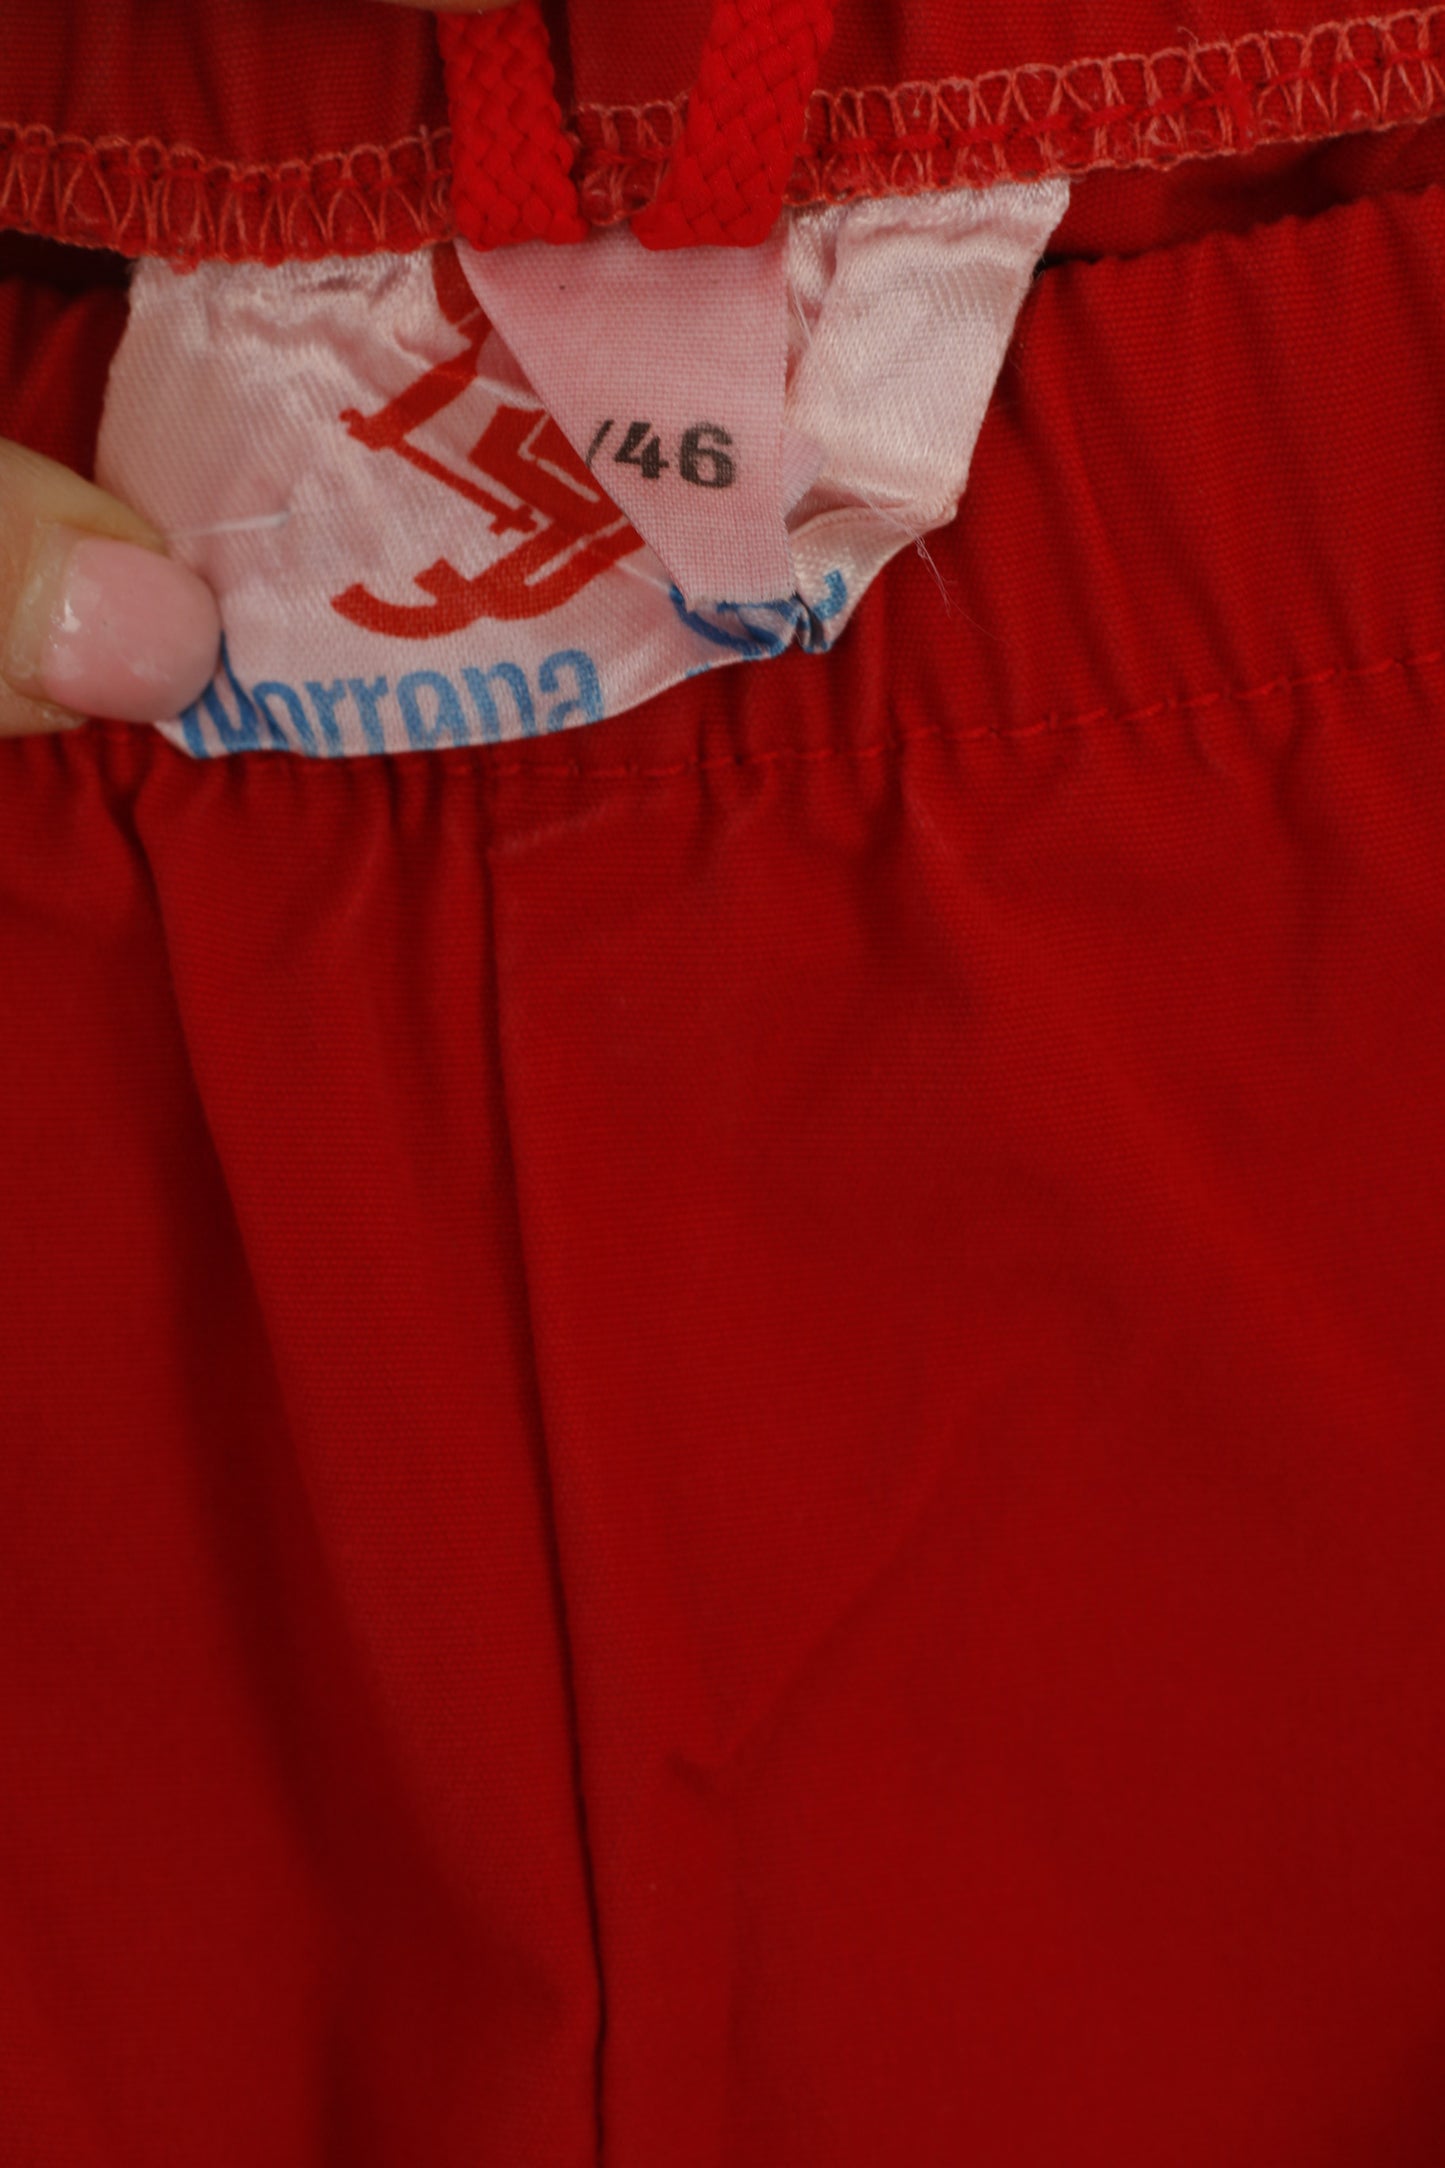 Norrona Sport Men S 44/46 Trousers Red Vintage Outdoor Sportswear Norway Pants